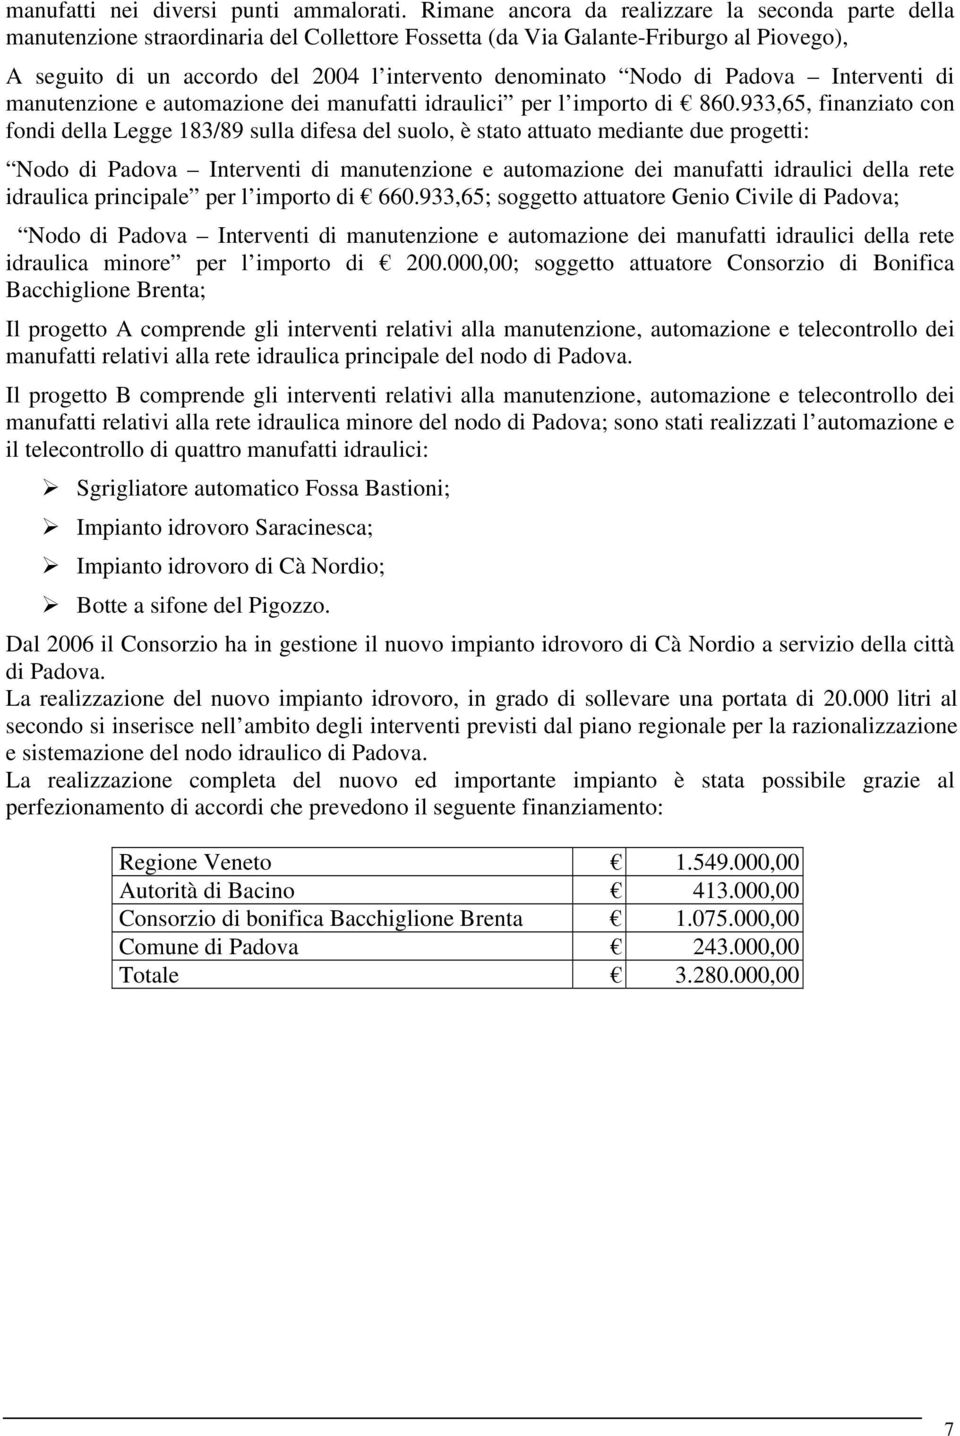 Nodo di Padova Interventi di manutenzione e automazione dei manufatti idraulici per l importo di 860.